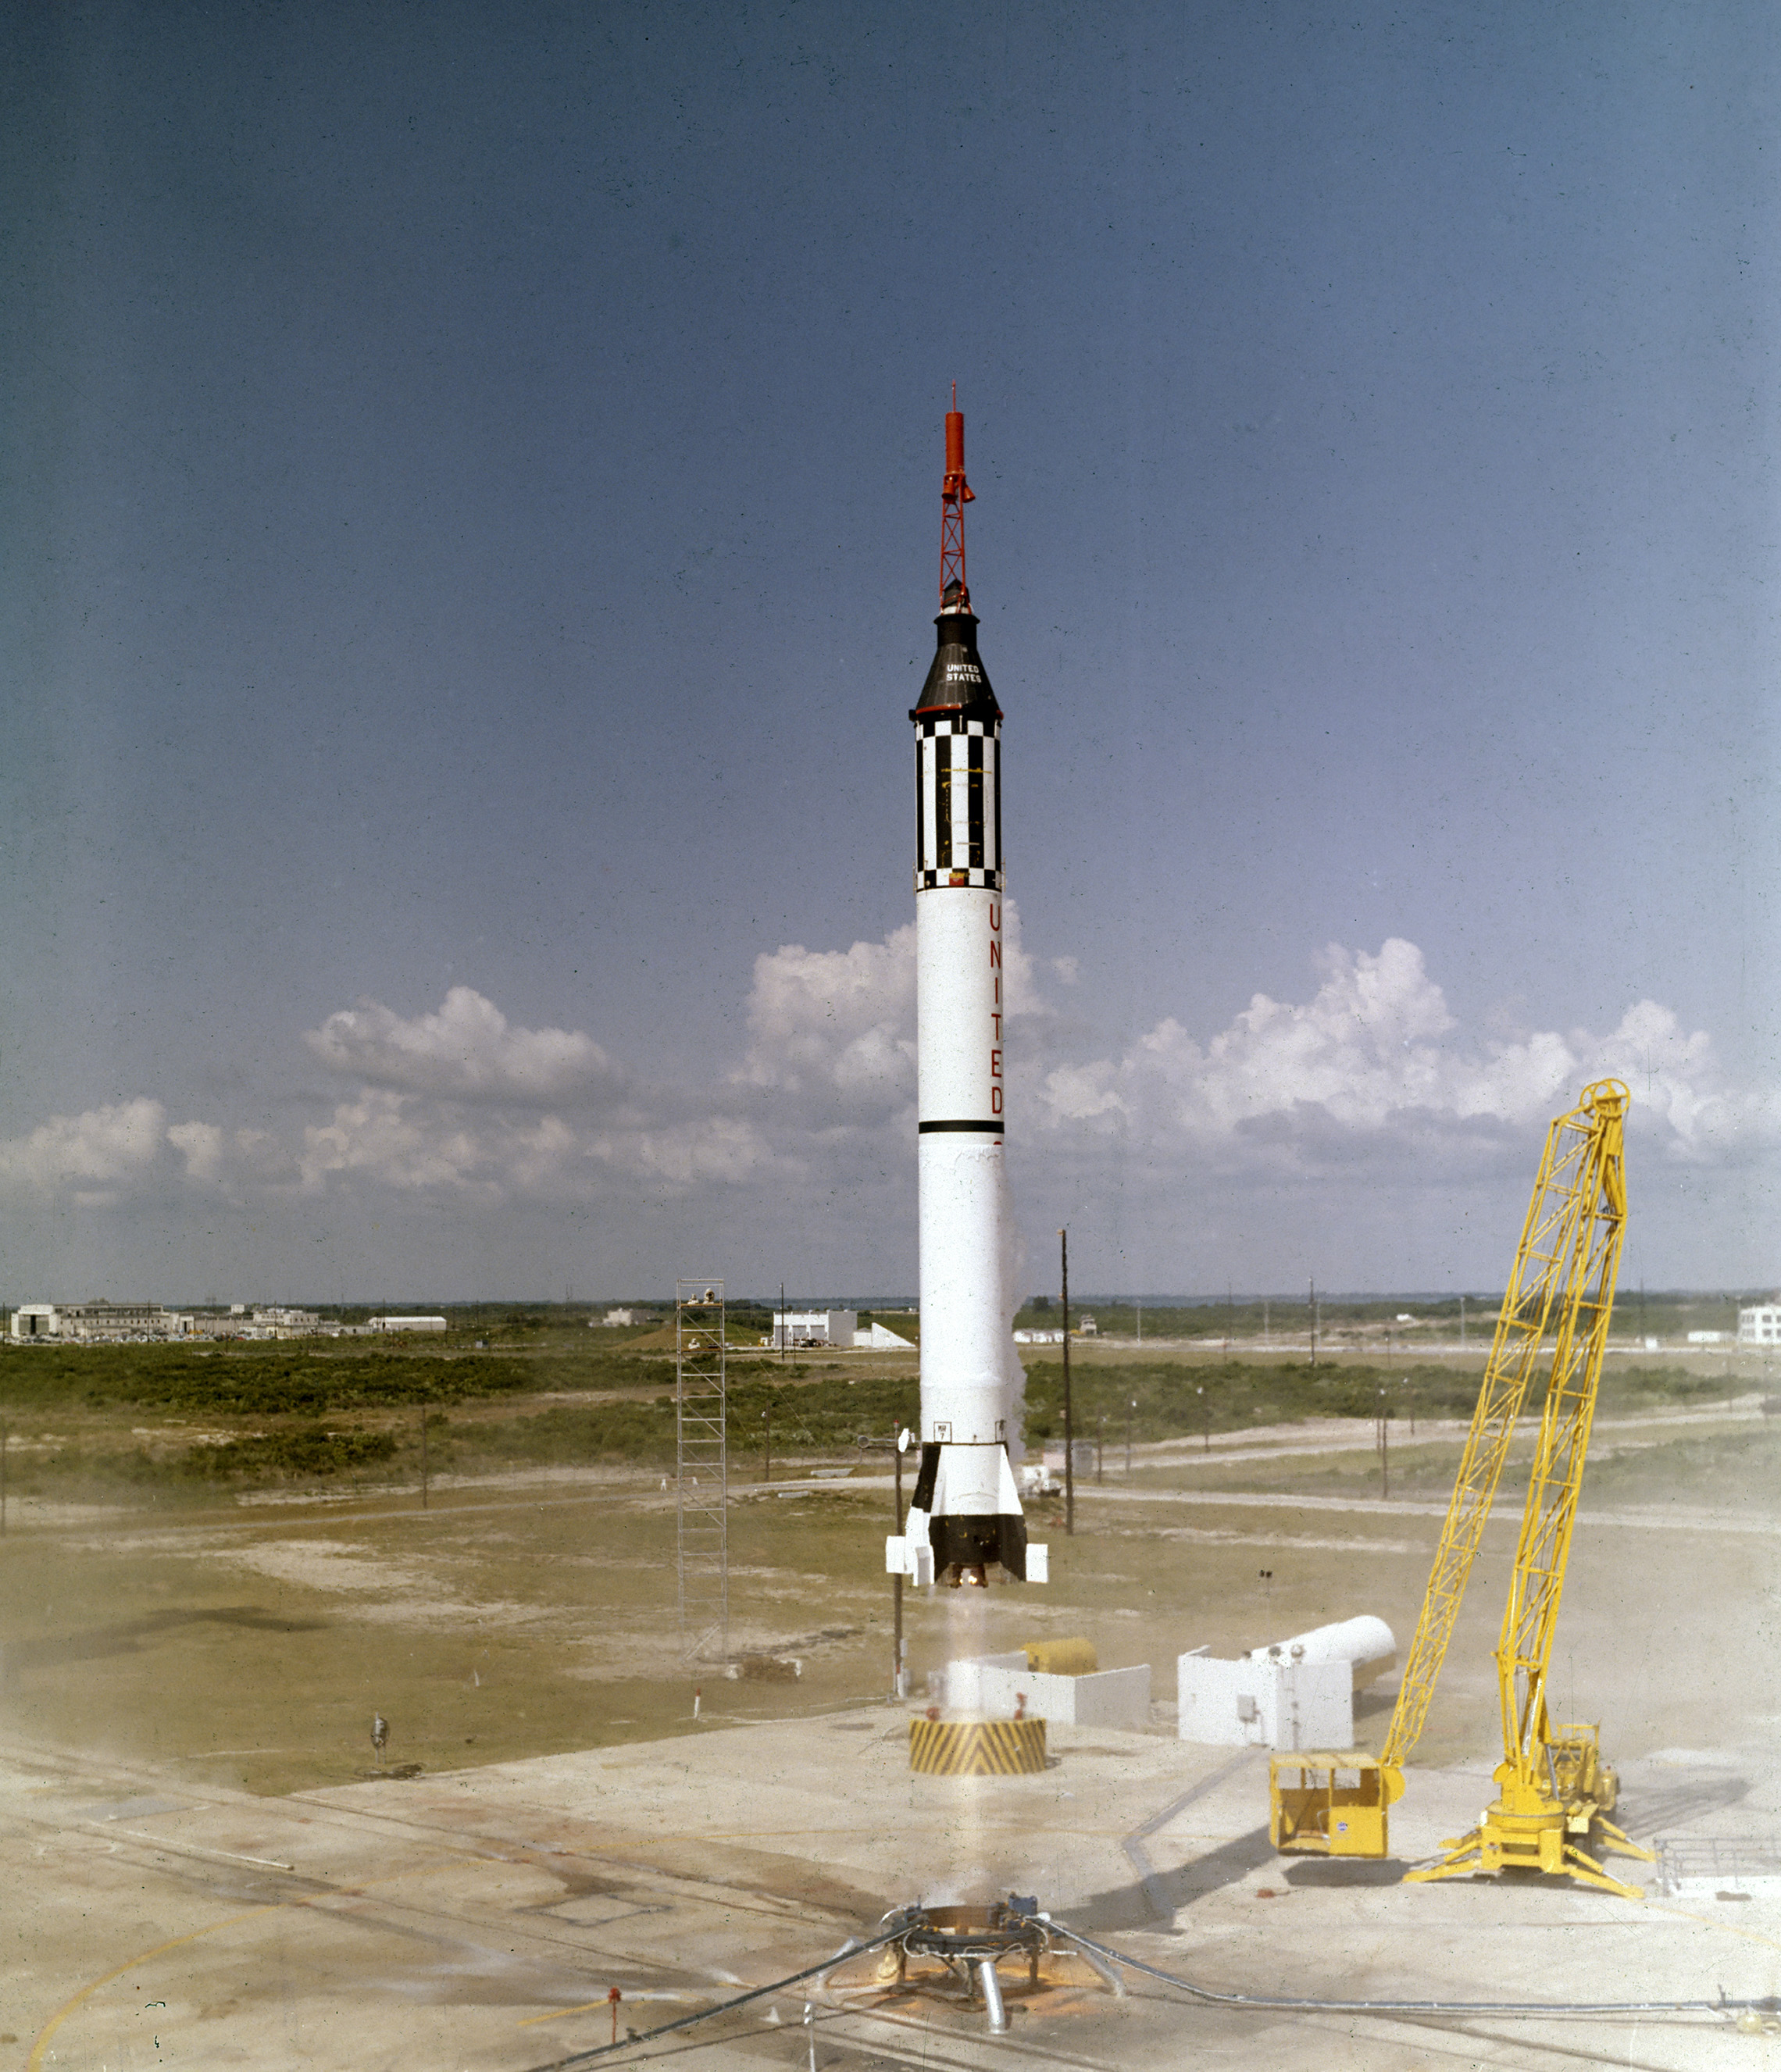 Astronaut Alan B. Shepard, Jr.løfter af i Freedom 7 Mercury-rumfartøjet den 5. maj 1961. Denne tredje flyvning af Mercury-Redstone (MR-3) køretøj, udviklet af Dr. vernher von Braun og raketholdet i Huntsille, Alabama, var den første bemandede rummission for De Forenede Stater. I løbet af den 15-minutters suborbitale flyvning nåede Shepard en højde på 115 miles og rejste 302 miles ned. (NASA)